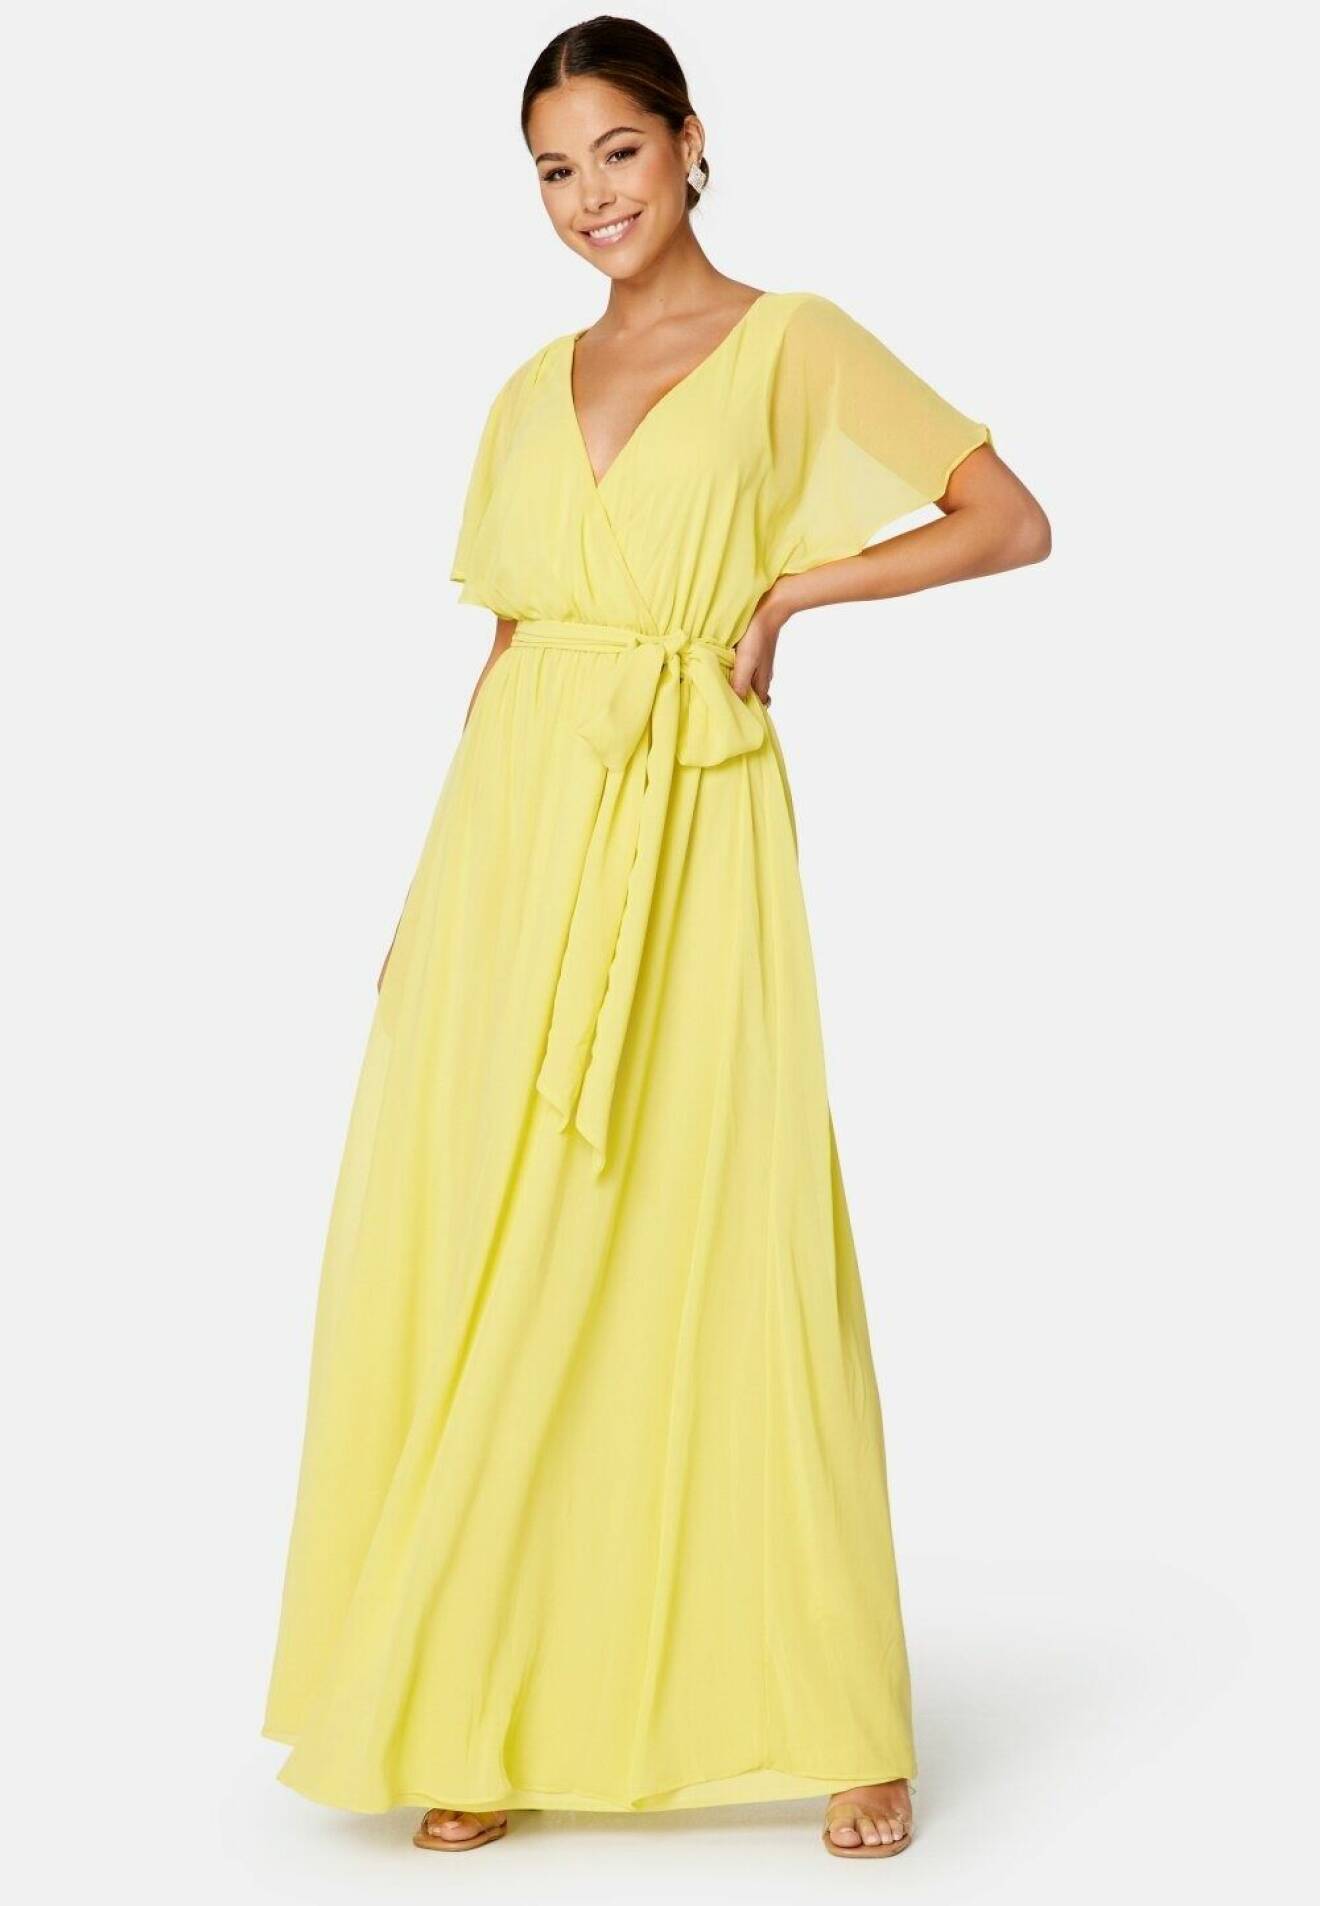 gul maxiklänning med kort ärm och knytning i midjan från bubbleroom för klädkoden högtidsdräkt